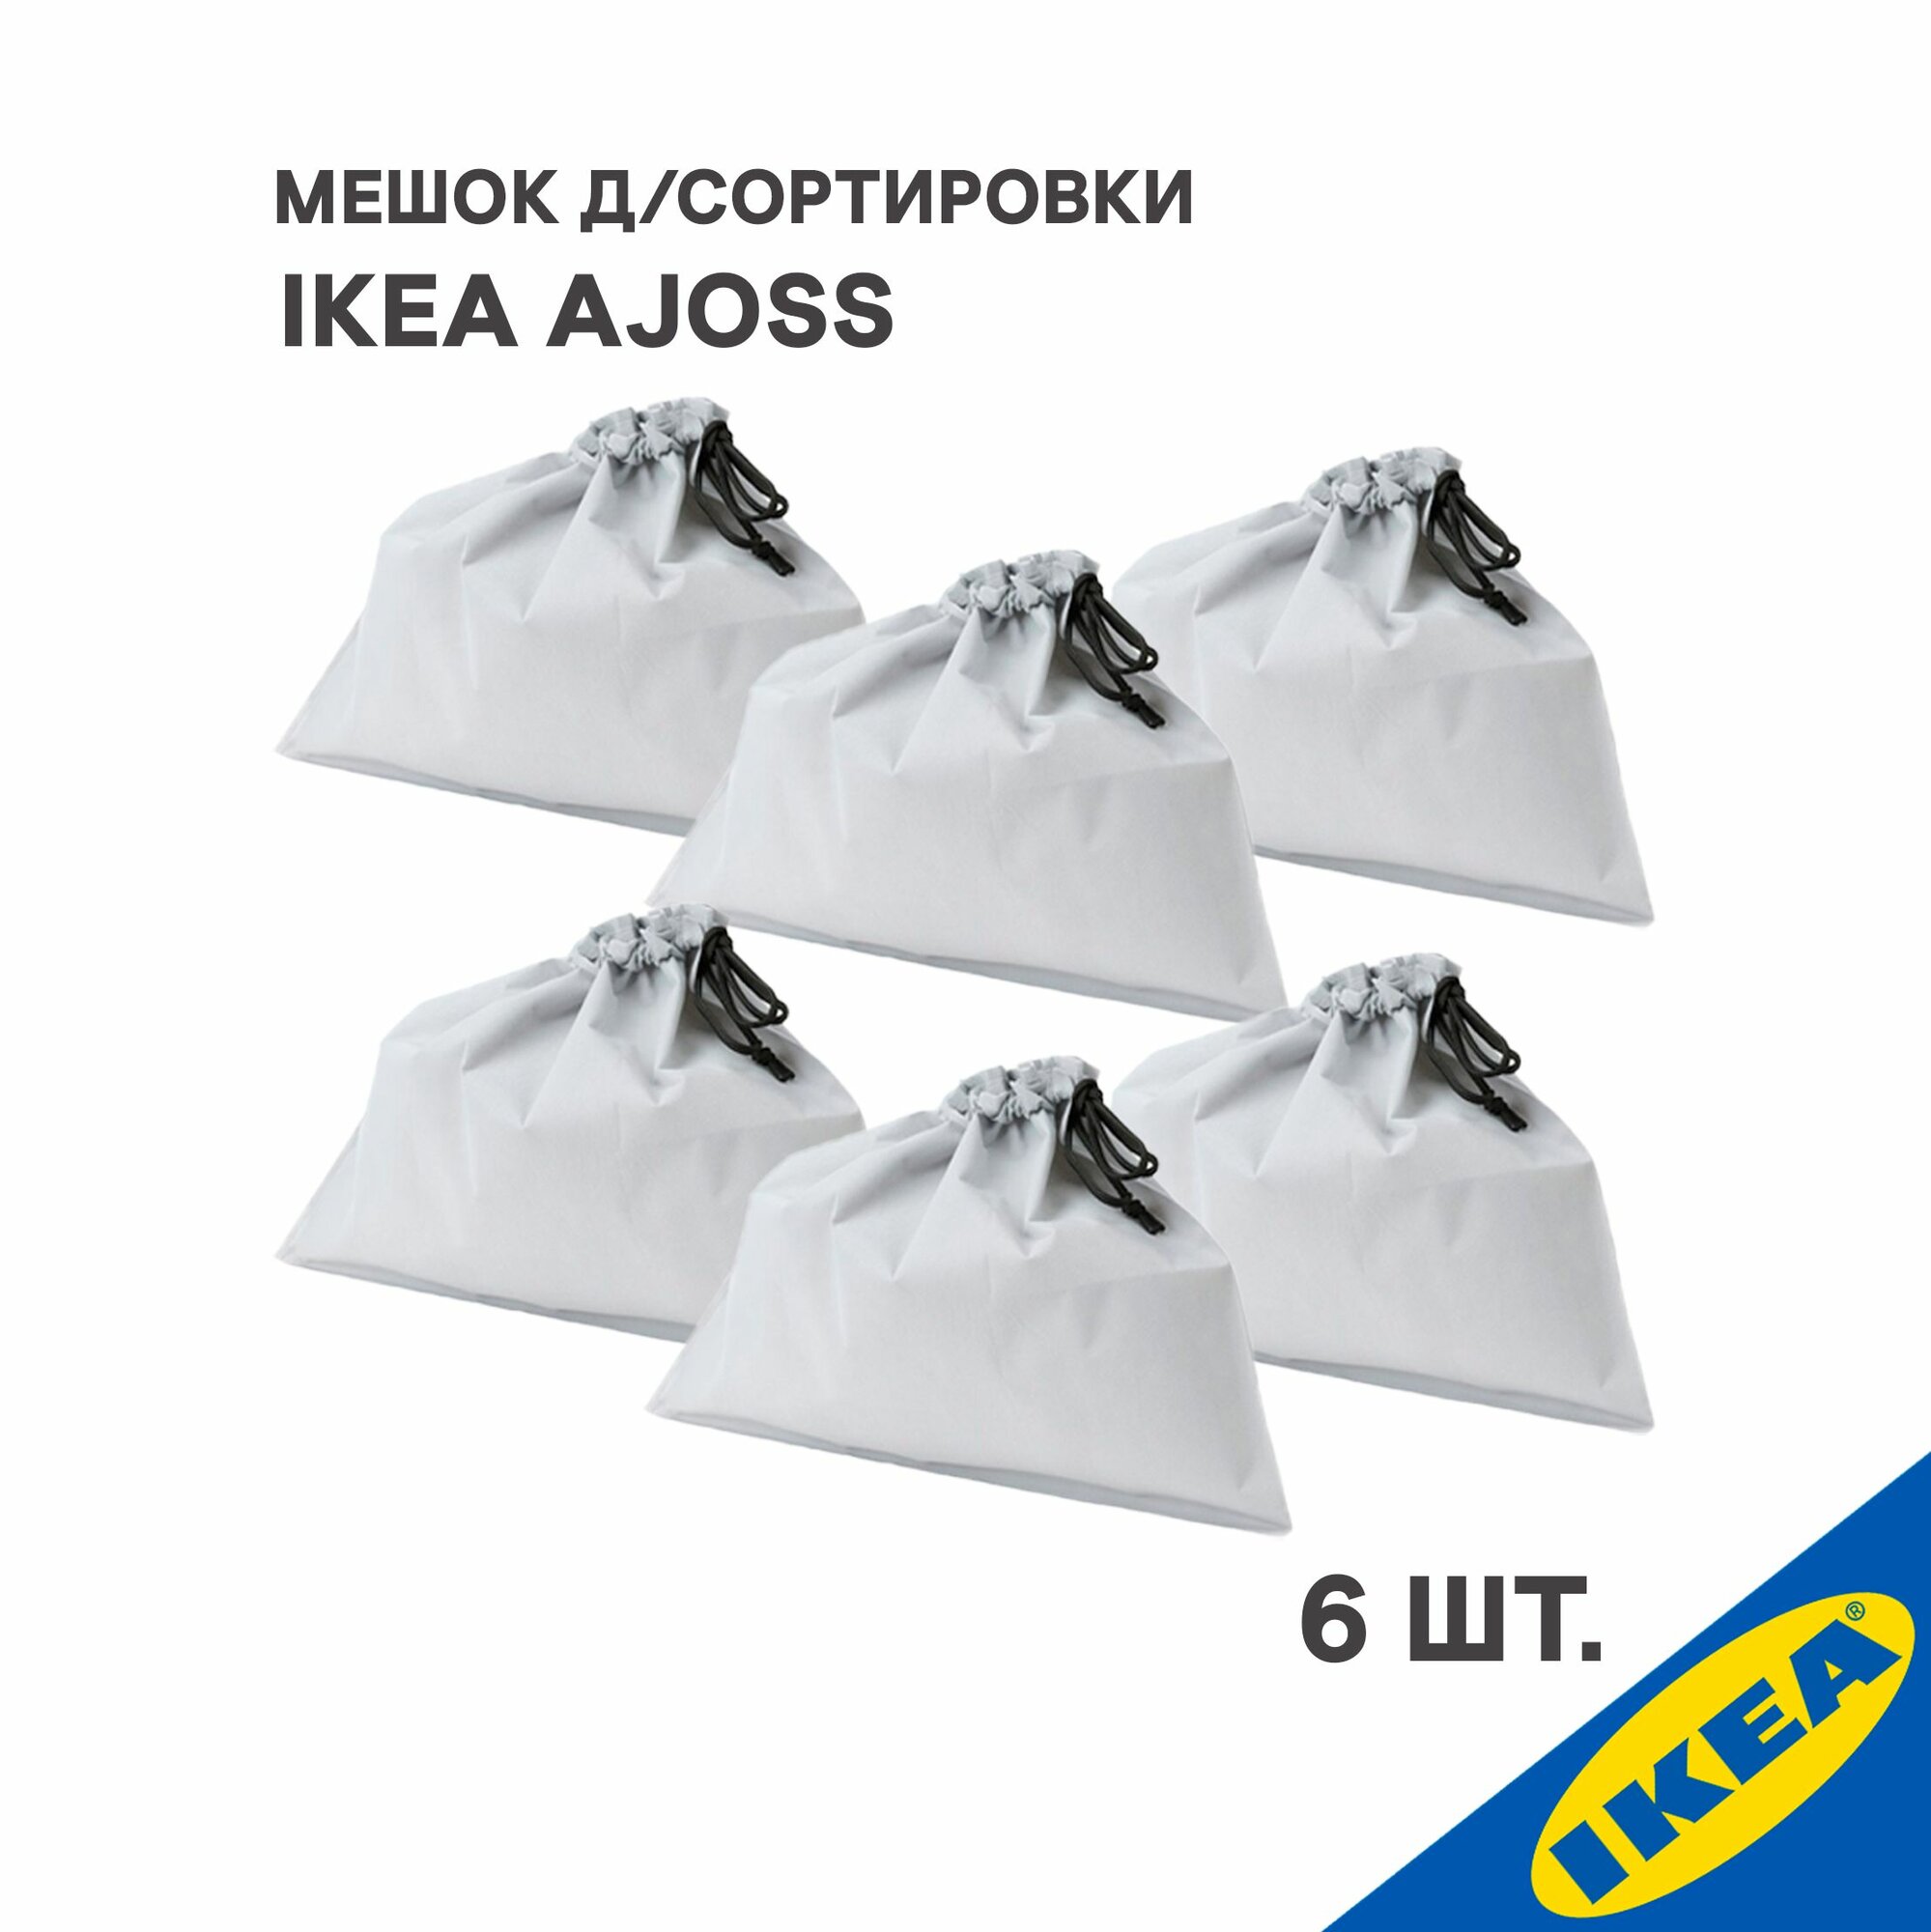 Мешок для сортировки 6 шт. IKEA AJOSS айосс 56x43 см/22л темно-серый